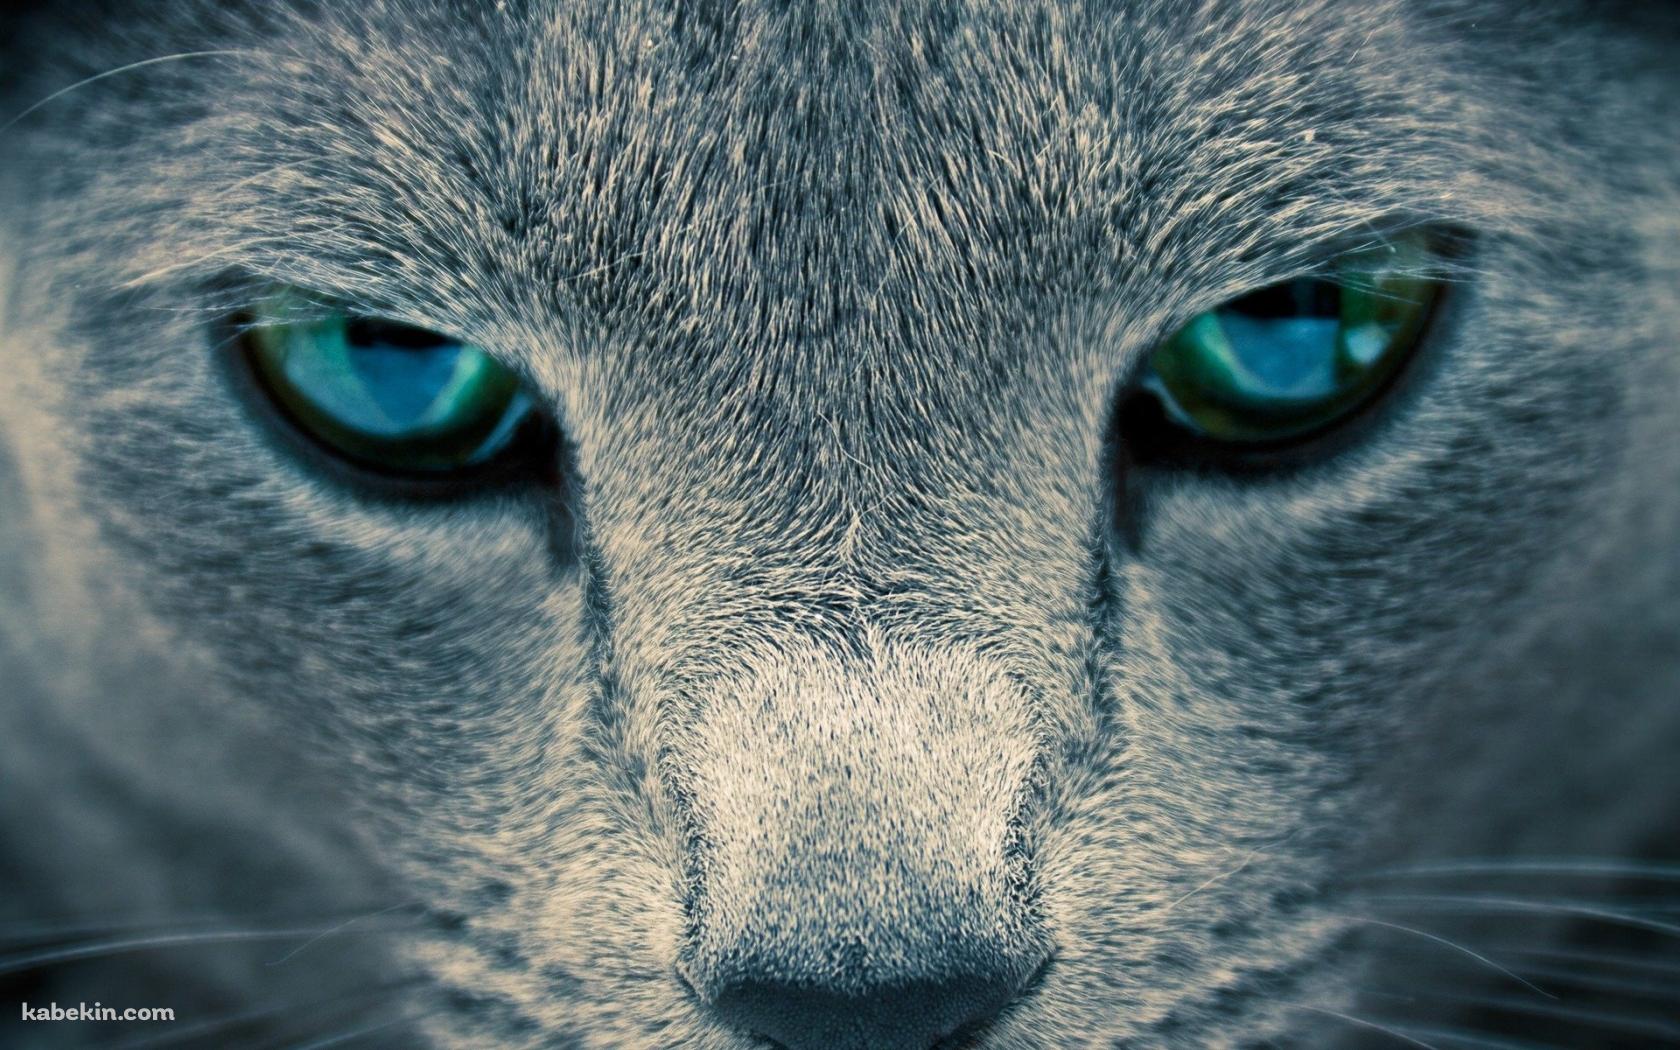 凄みのある青い目の猫の壁紙(1680px x 1050px) 高画質 PC・デスクトップ用